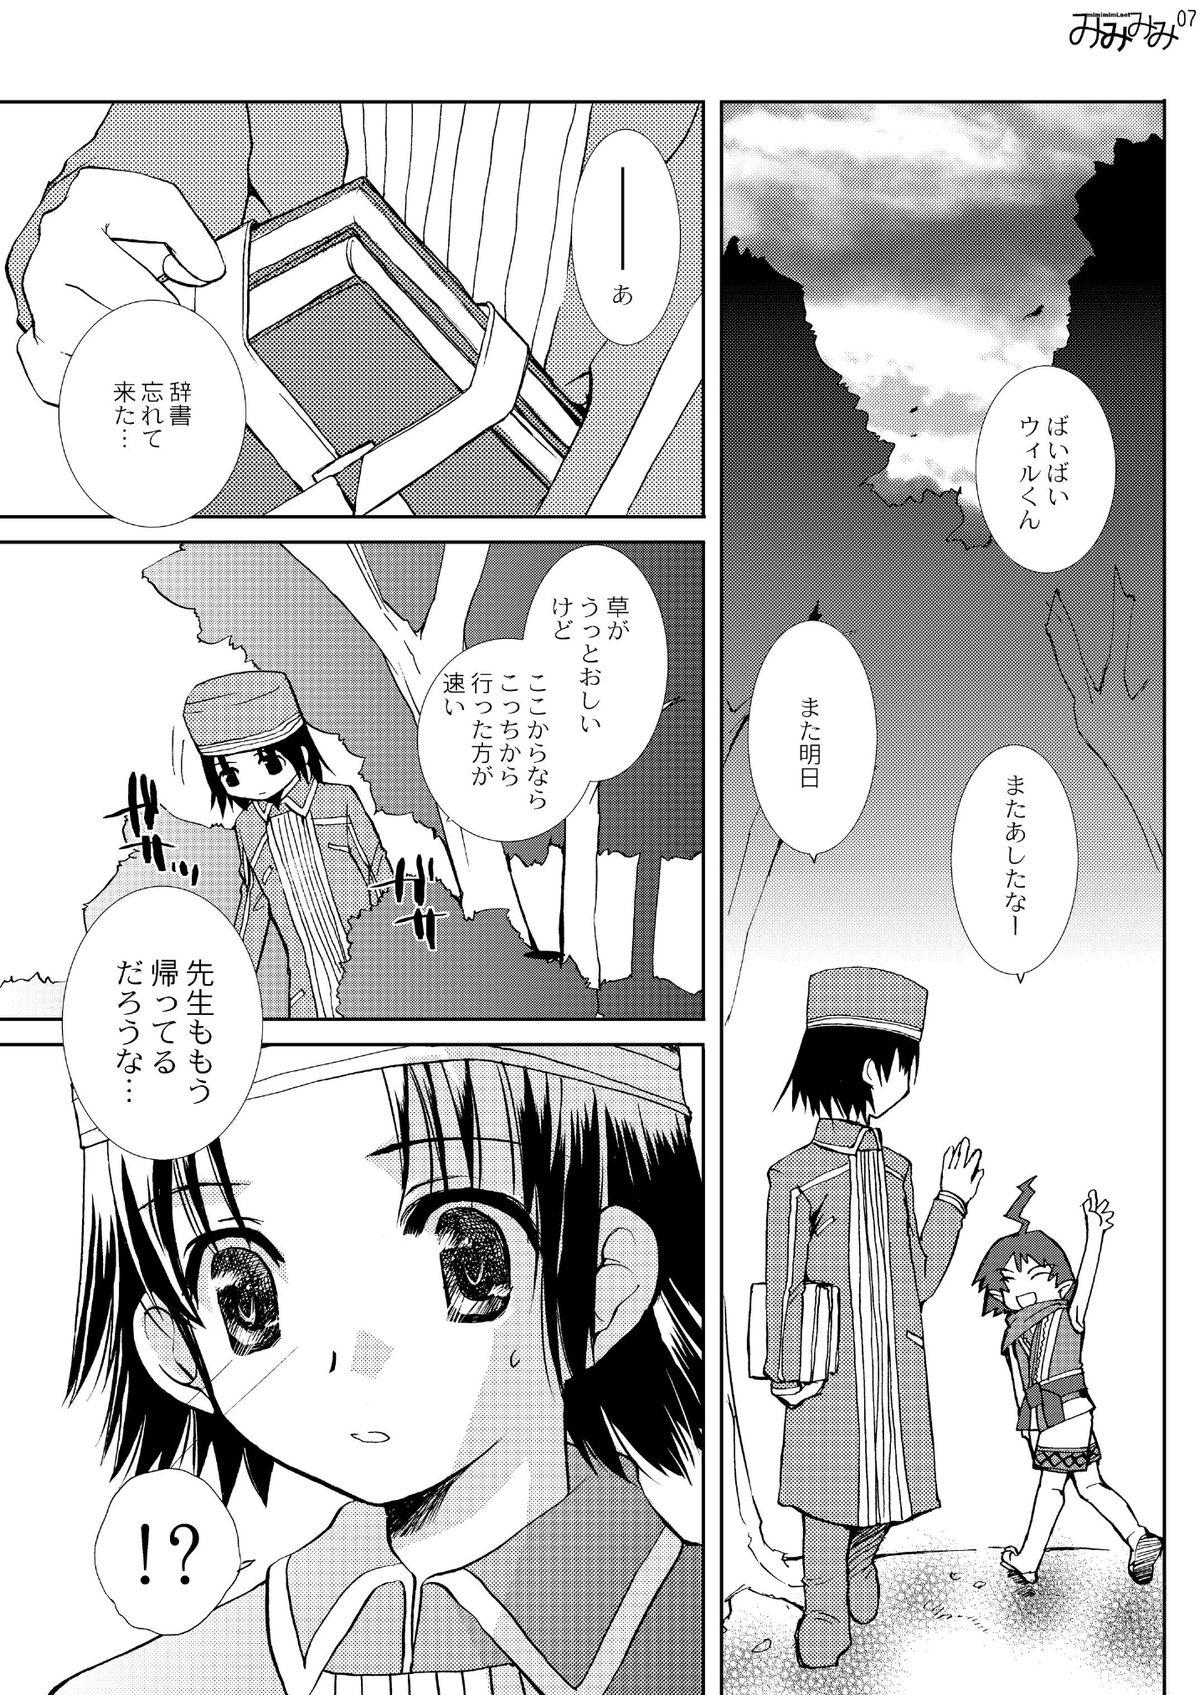 Three Some [Mimimimi (Narita Riuku)] Ati-sensei no Hachimitsu Jugyou Sairoku-ban (Summon Night 3) [Digital] - Summon night Assfuck - Page 7